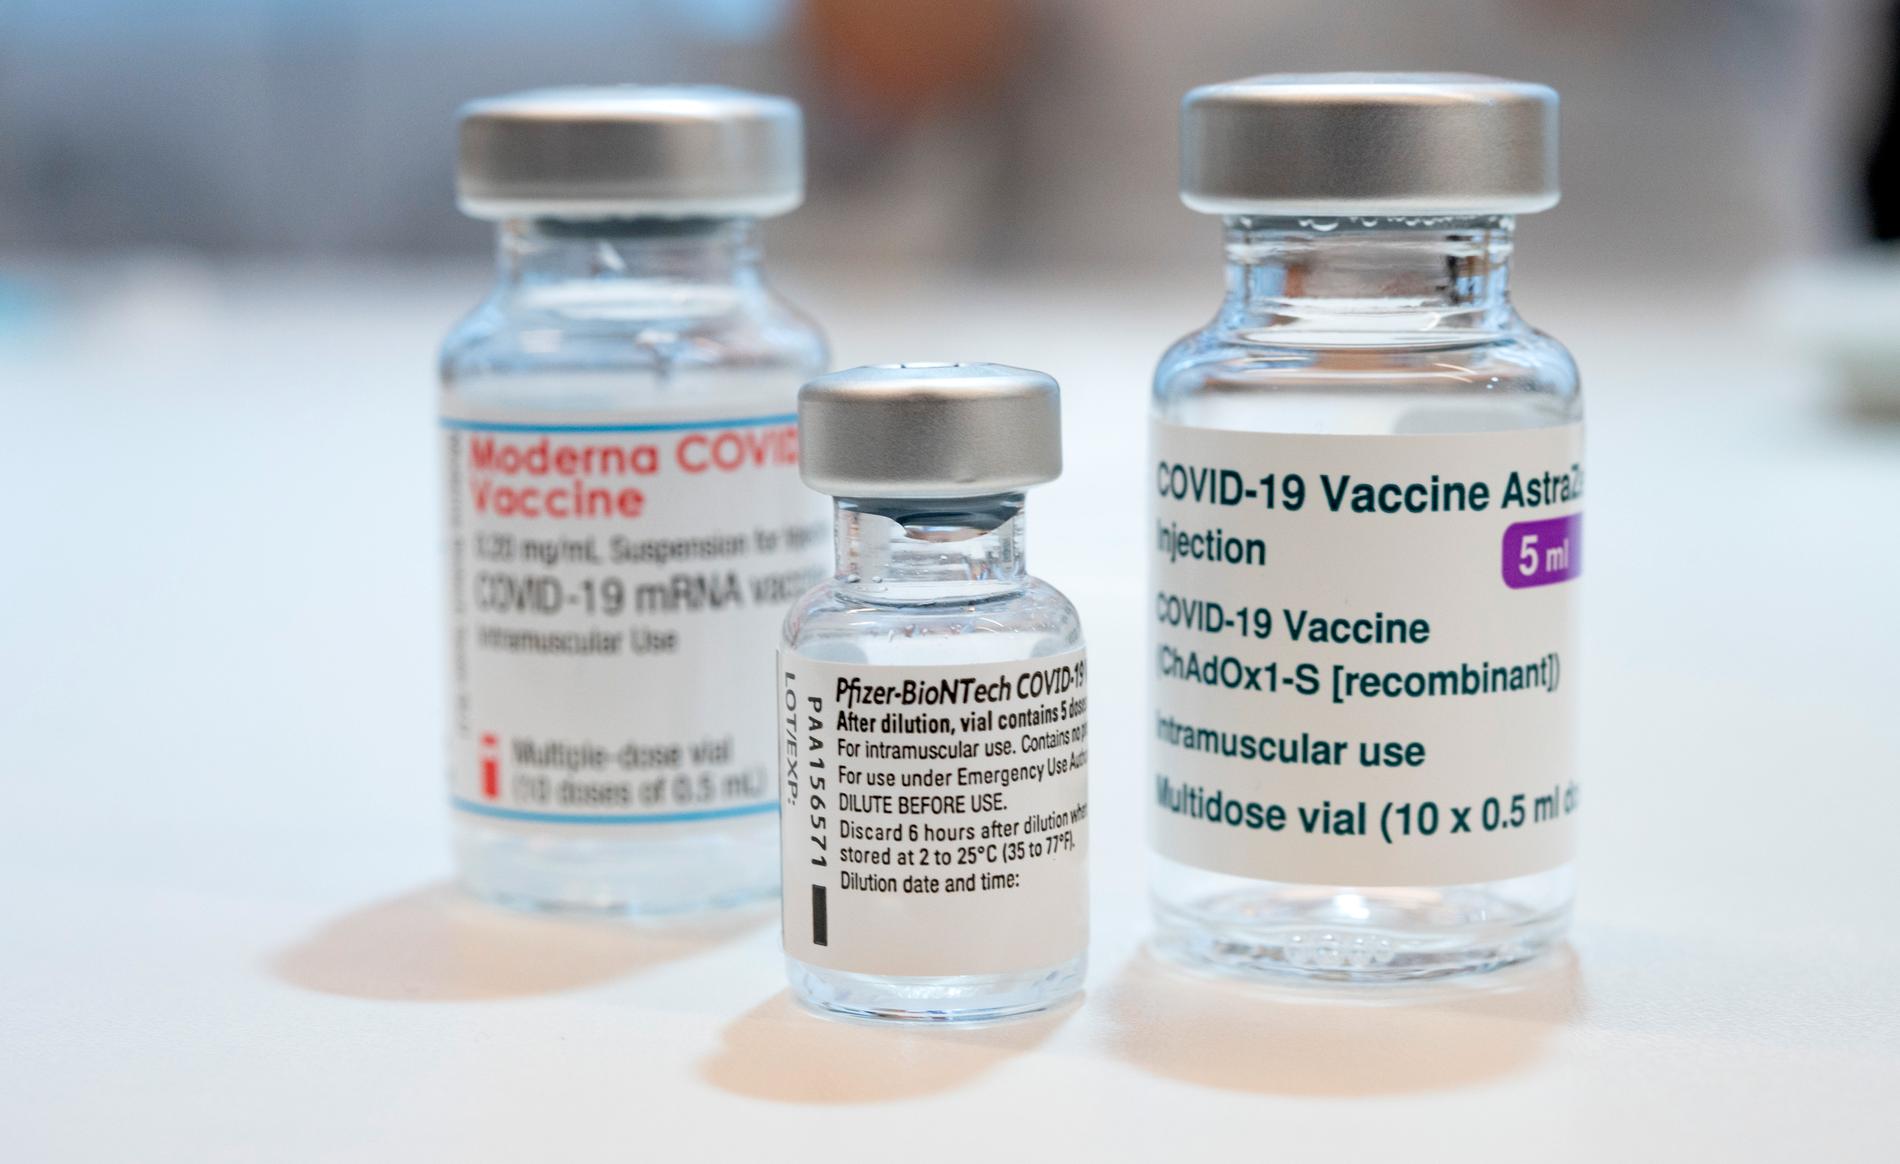 Hittills finns det tre godkända covidvaccin som används i Sverige. Det är vaccin från Moderna, Pfizer/Biontech och Astra Zeneca.